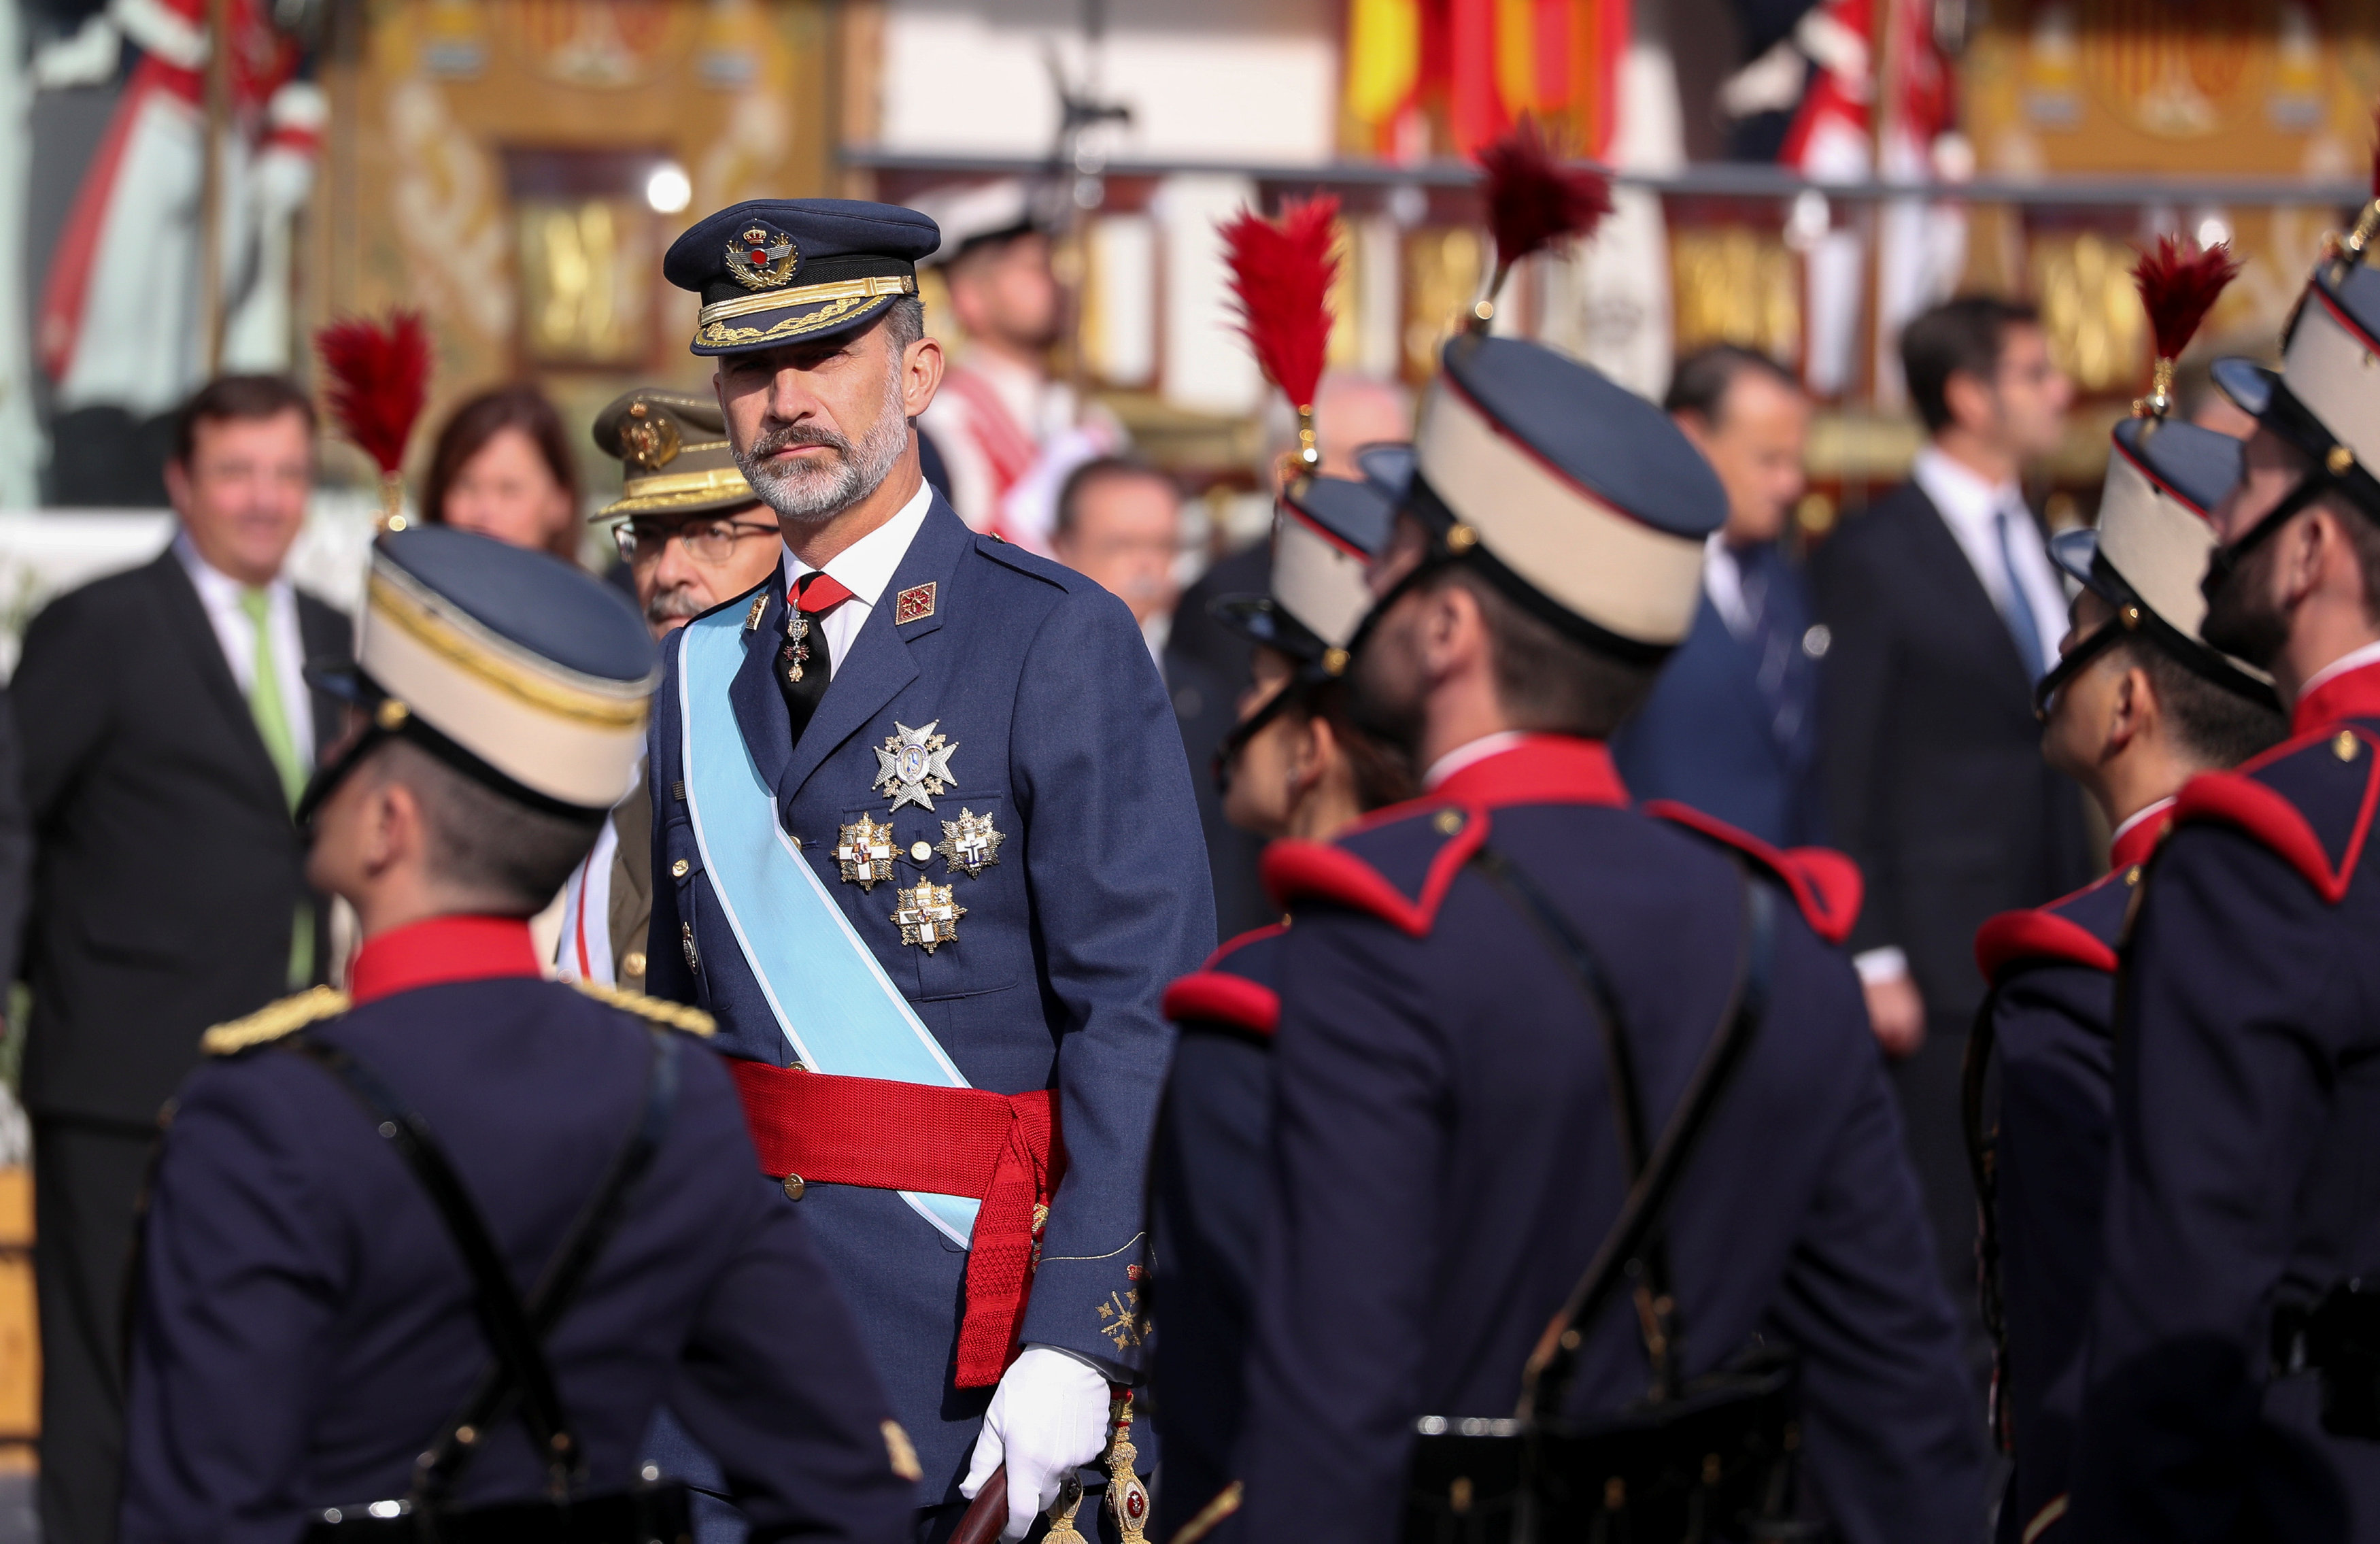 الملك فيليب السادس ملك إسبانيا يستعرض حرس الشرف